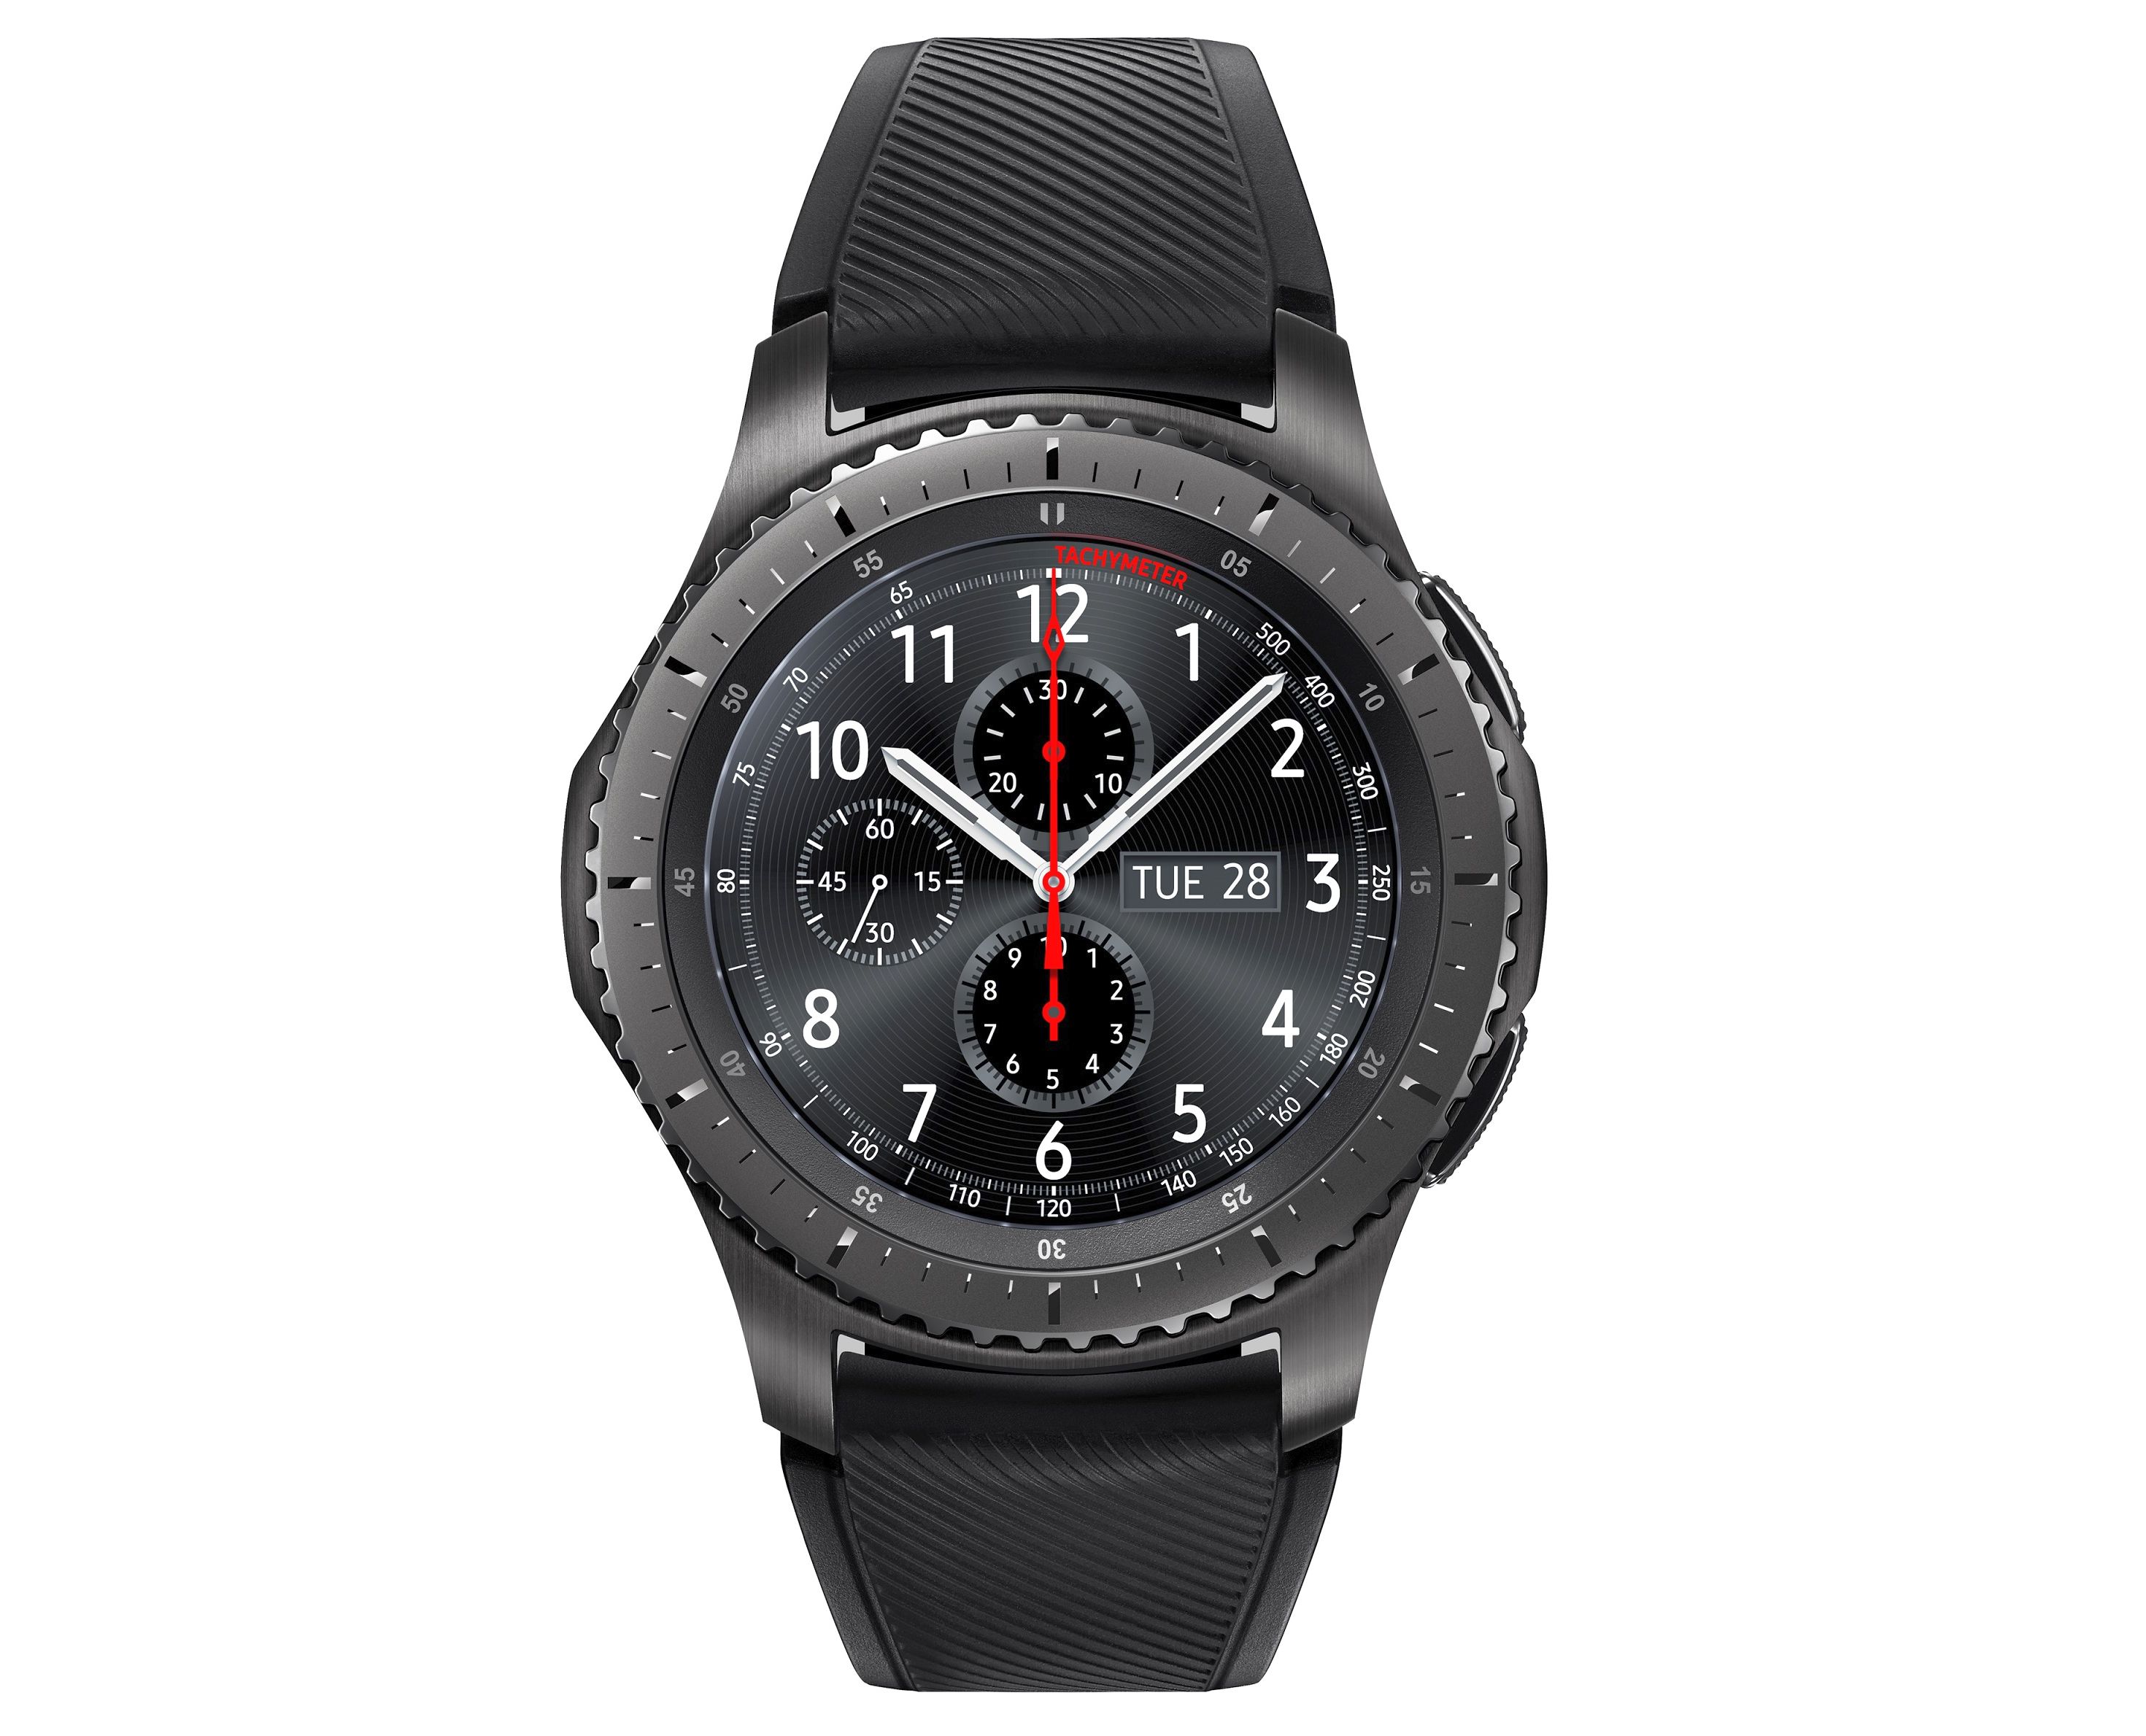 Samsung a lansat noul smartwatch Gear S3